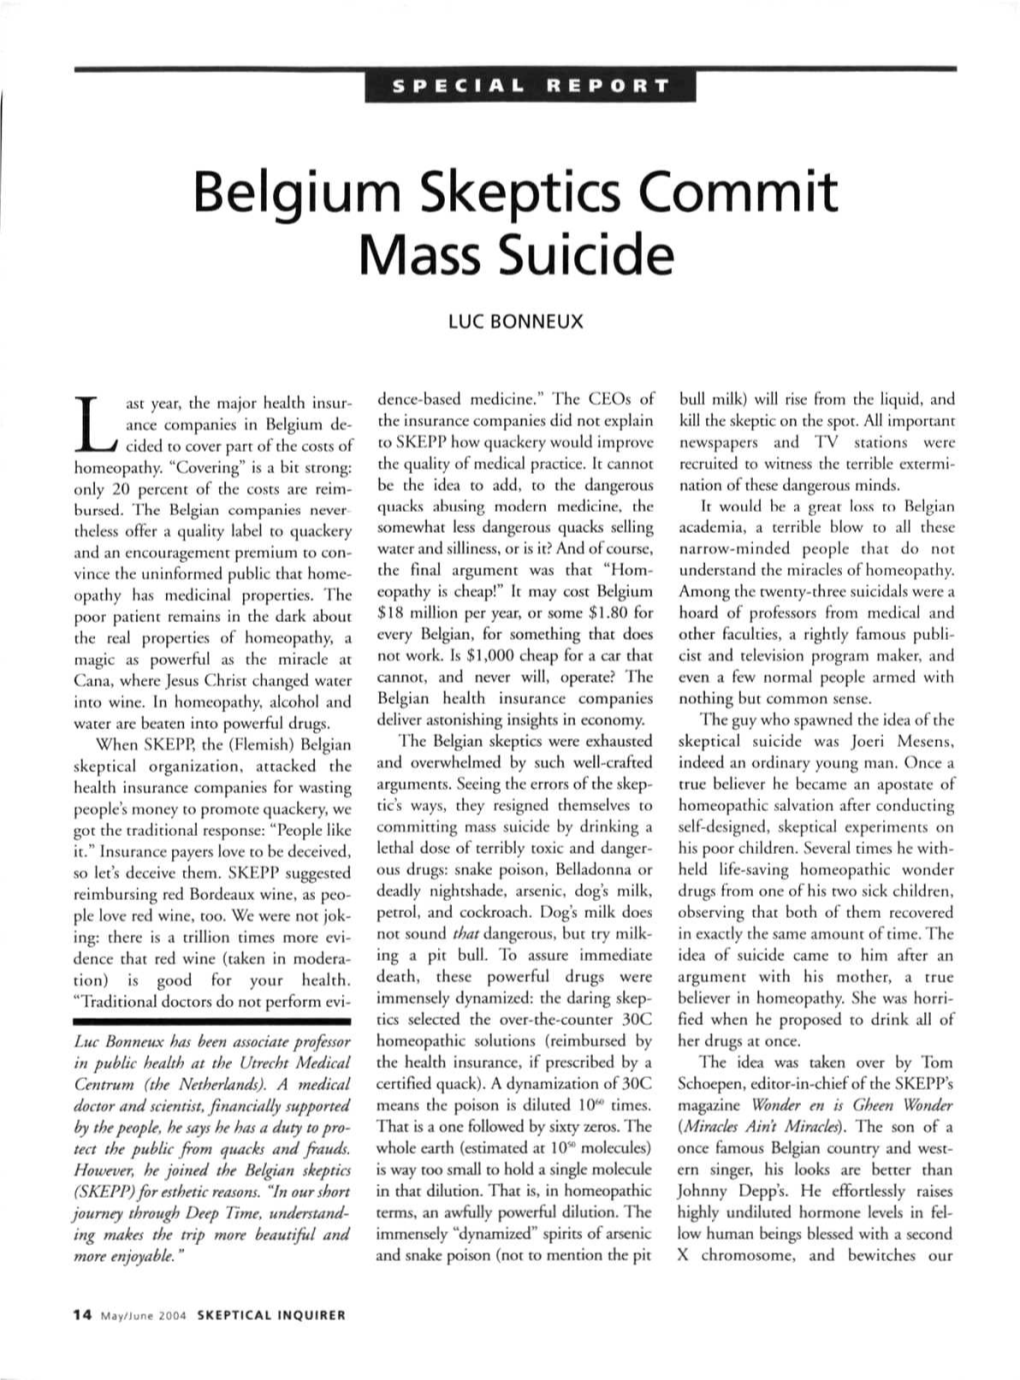 Belgium Skeptics Commit Mass Suicide